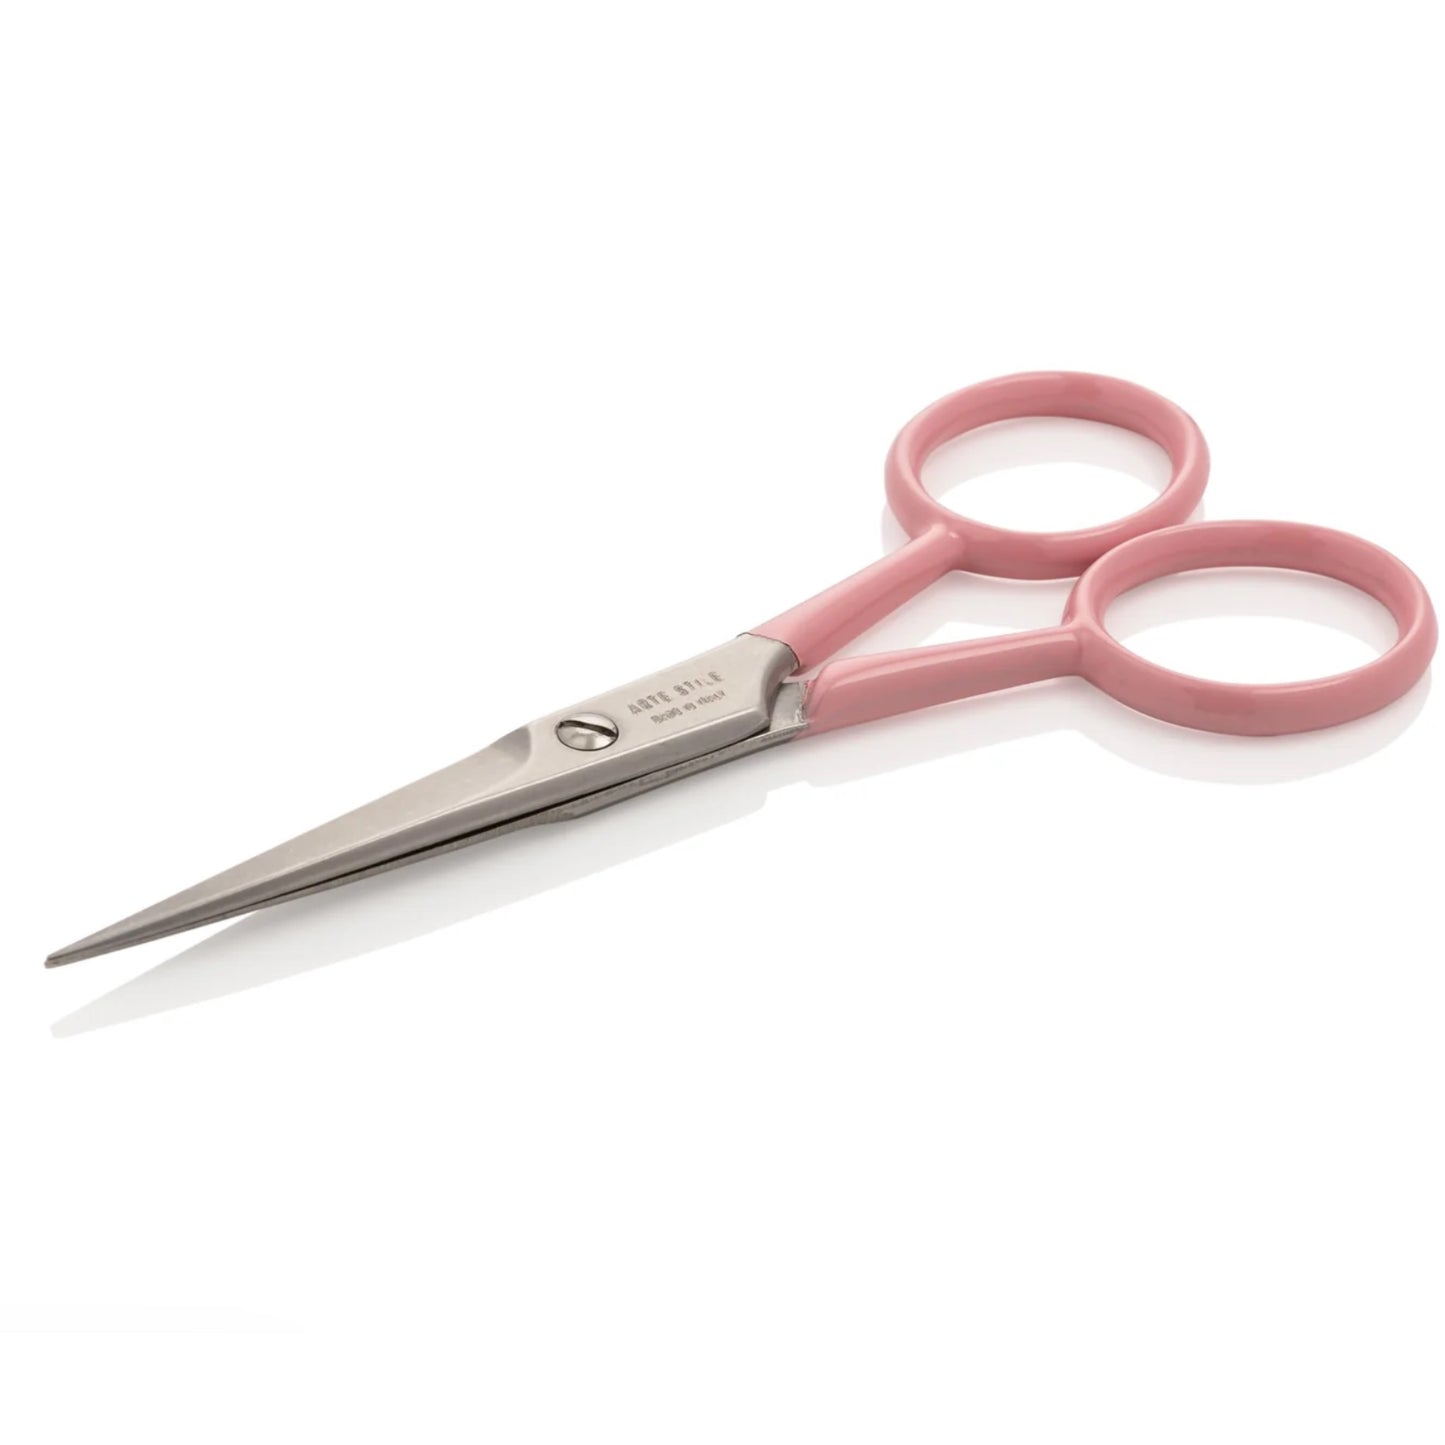 artestile brow scissors